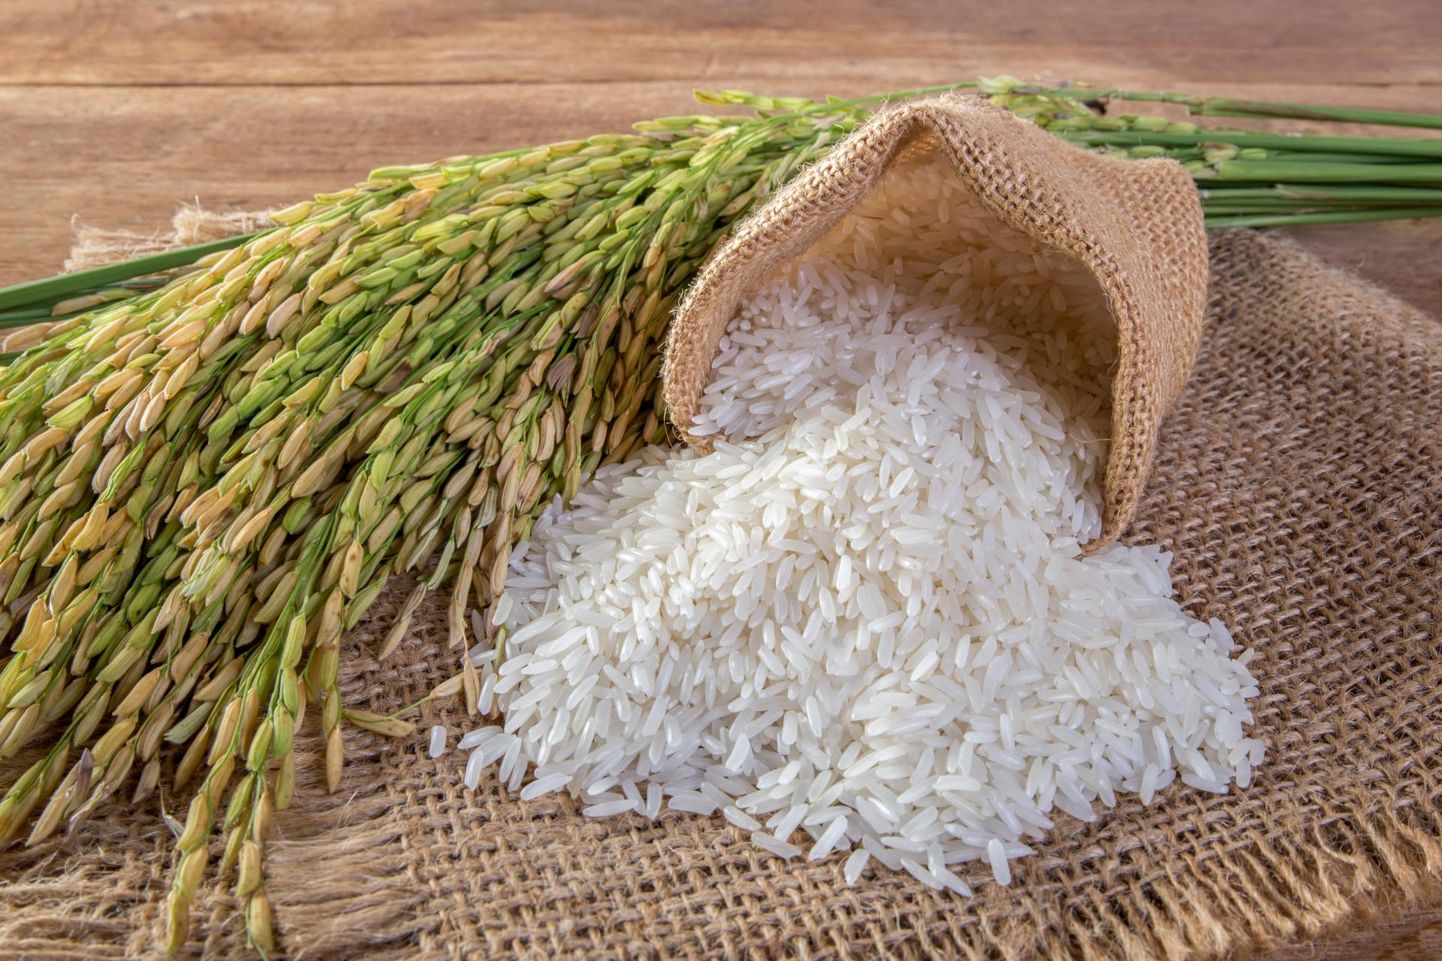 Valge riis on kooritud riis, millelt on kest eemaldatud.